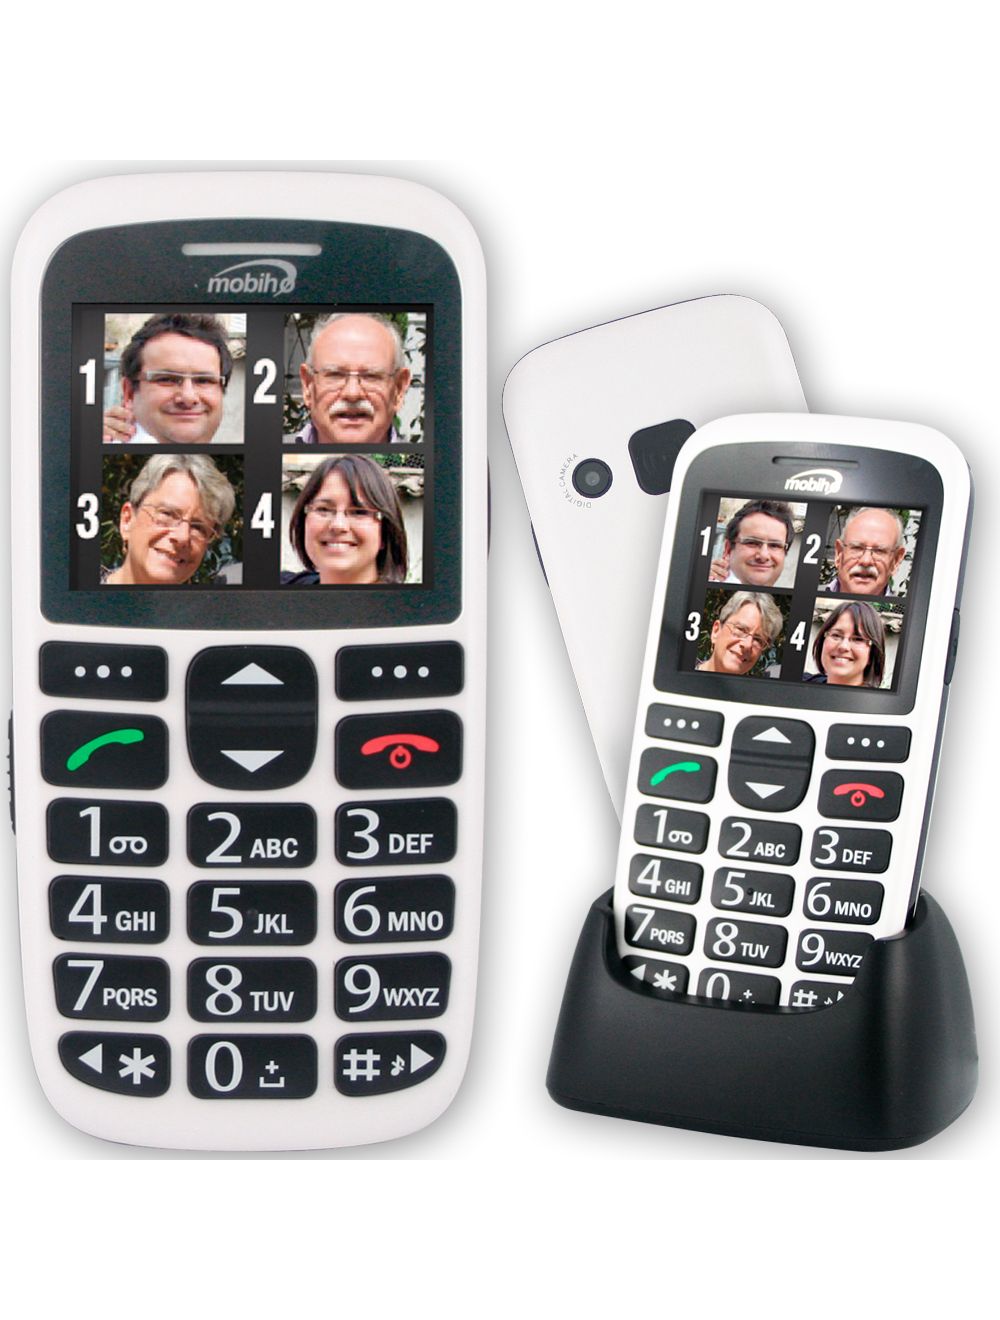 Téléphones pour Séniors : : Achat / Vente / Prix - Matériel adapté aux  Personnes âgées